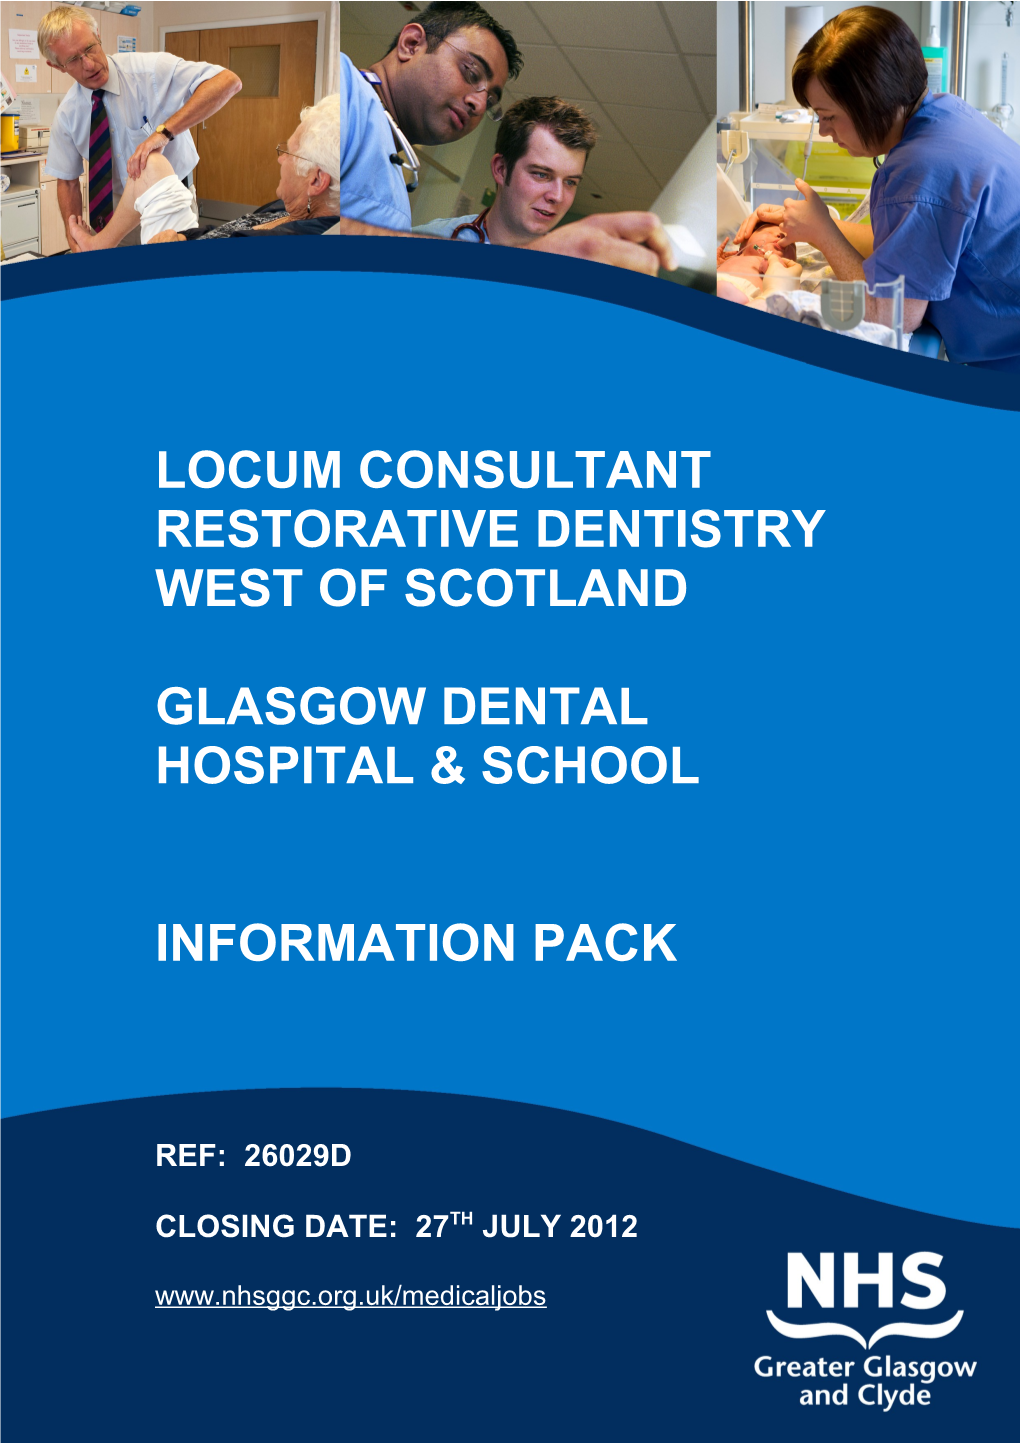 Locum Consultant Restorative Dentistry West of Scotland